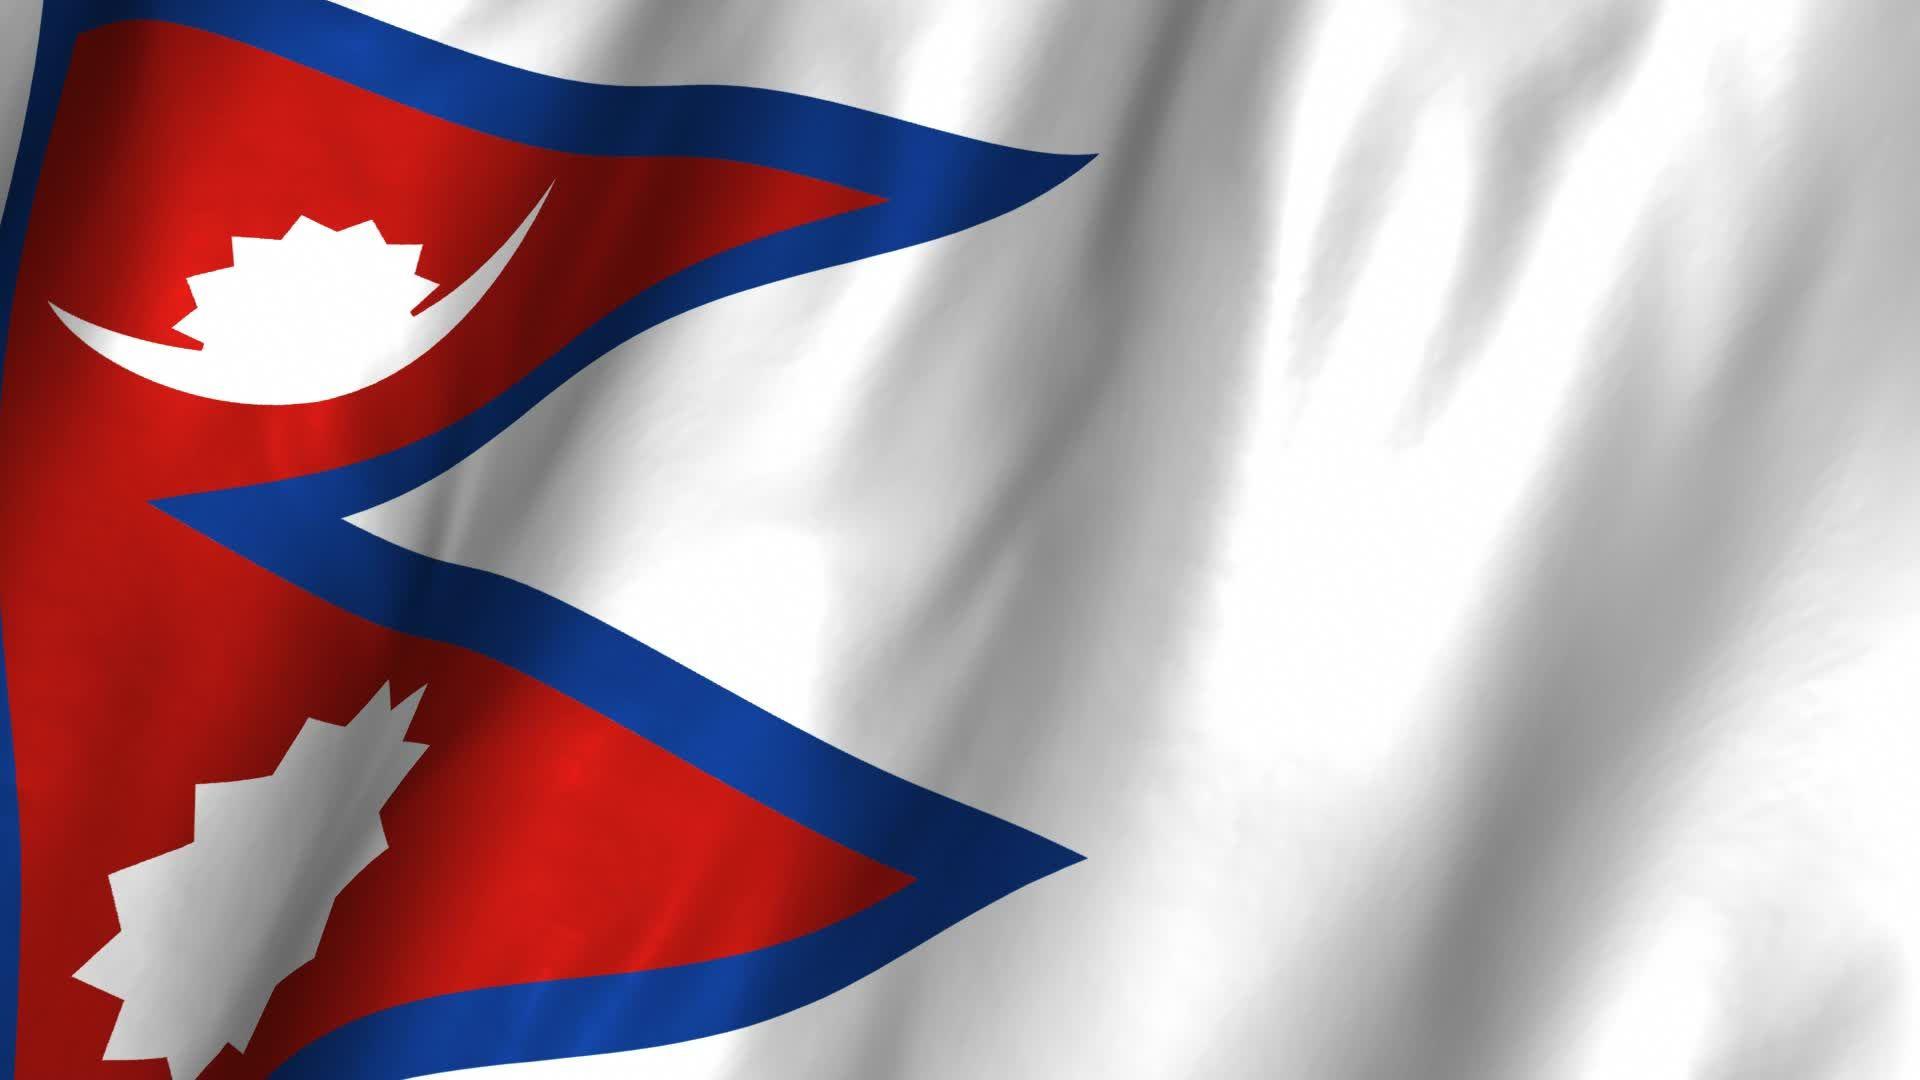 Banderas Animadas De Nepal - vrogue.co